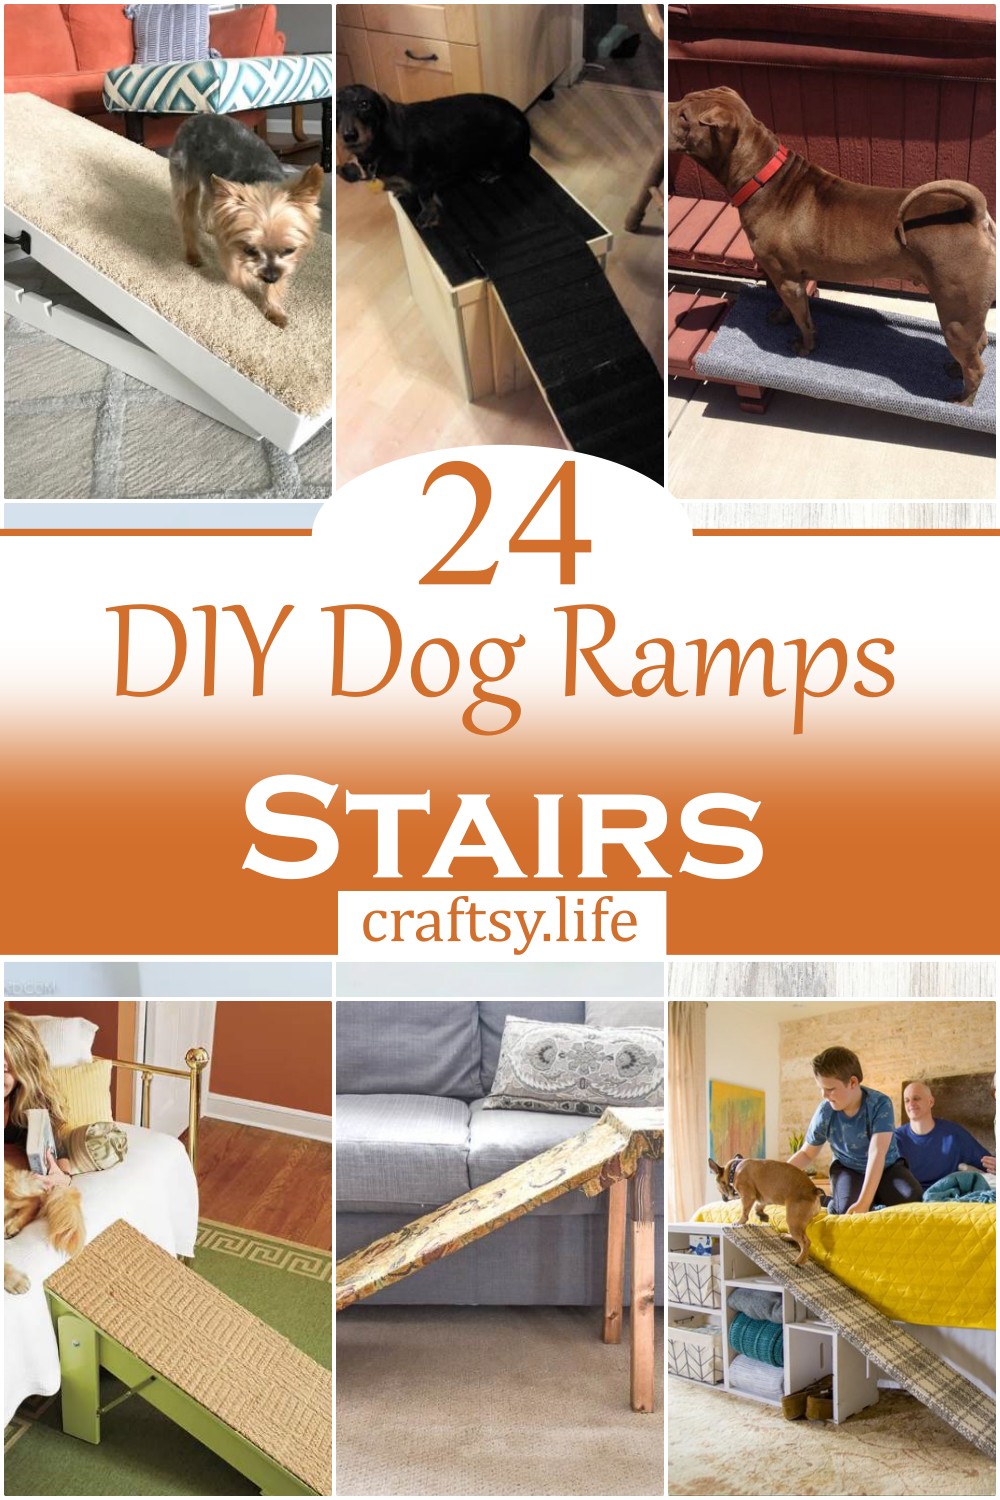 DIY Dog Ramps & Stairs